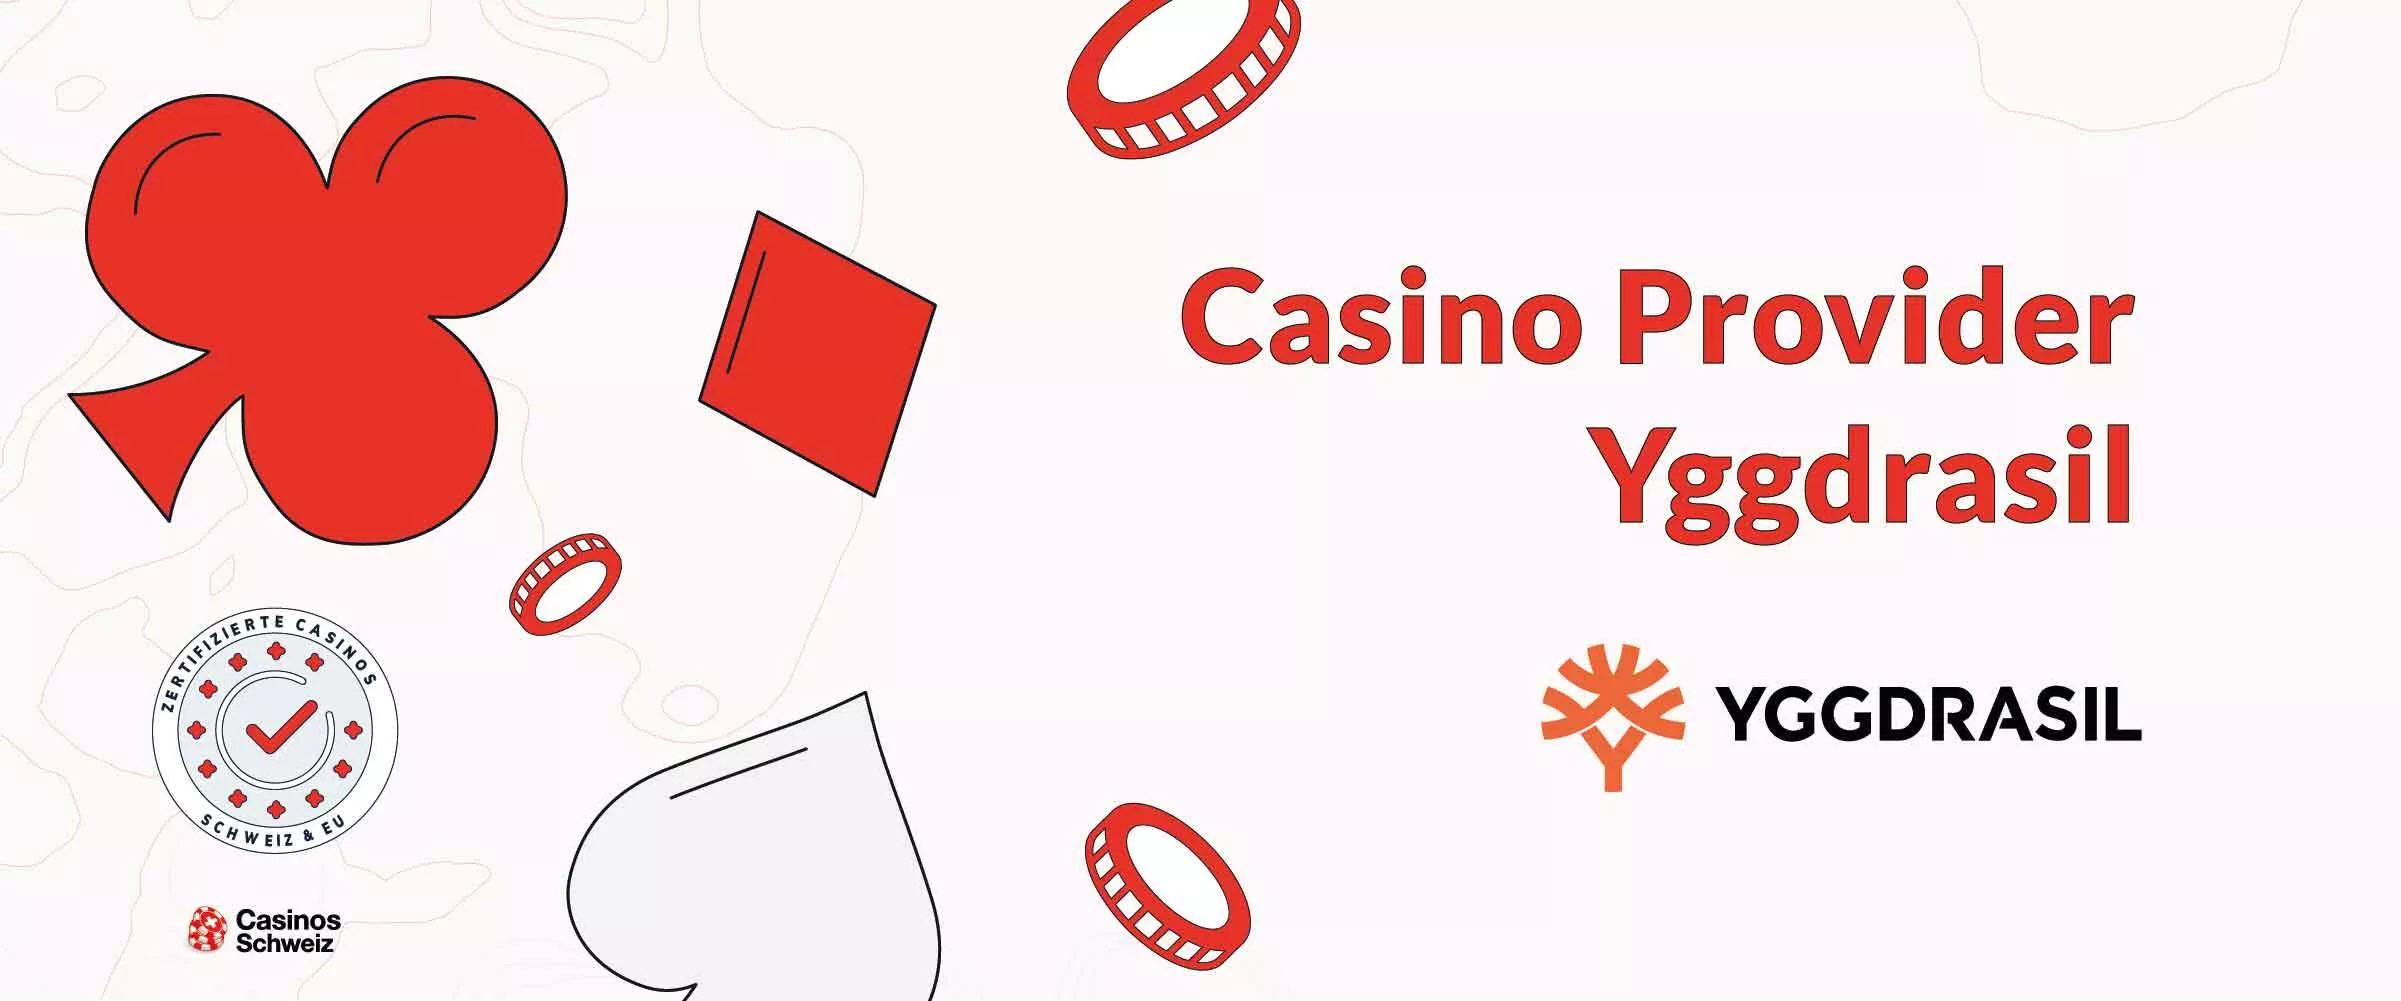 Casino Provider Yggdrasil